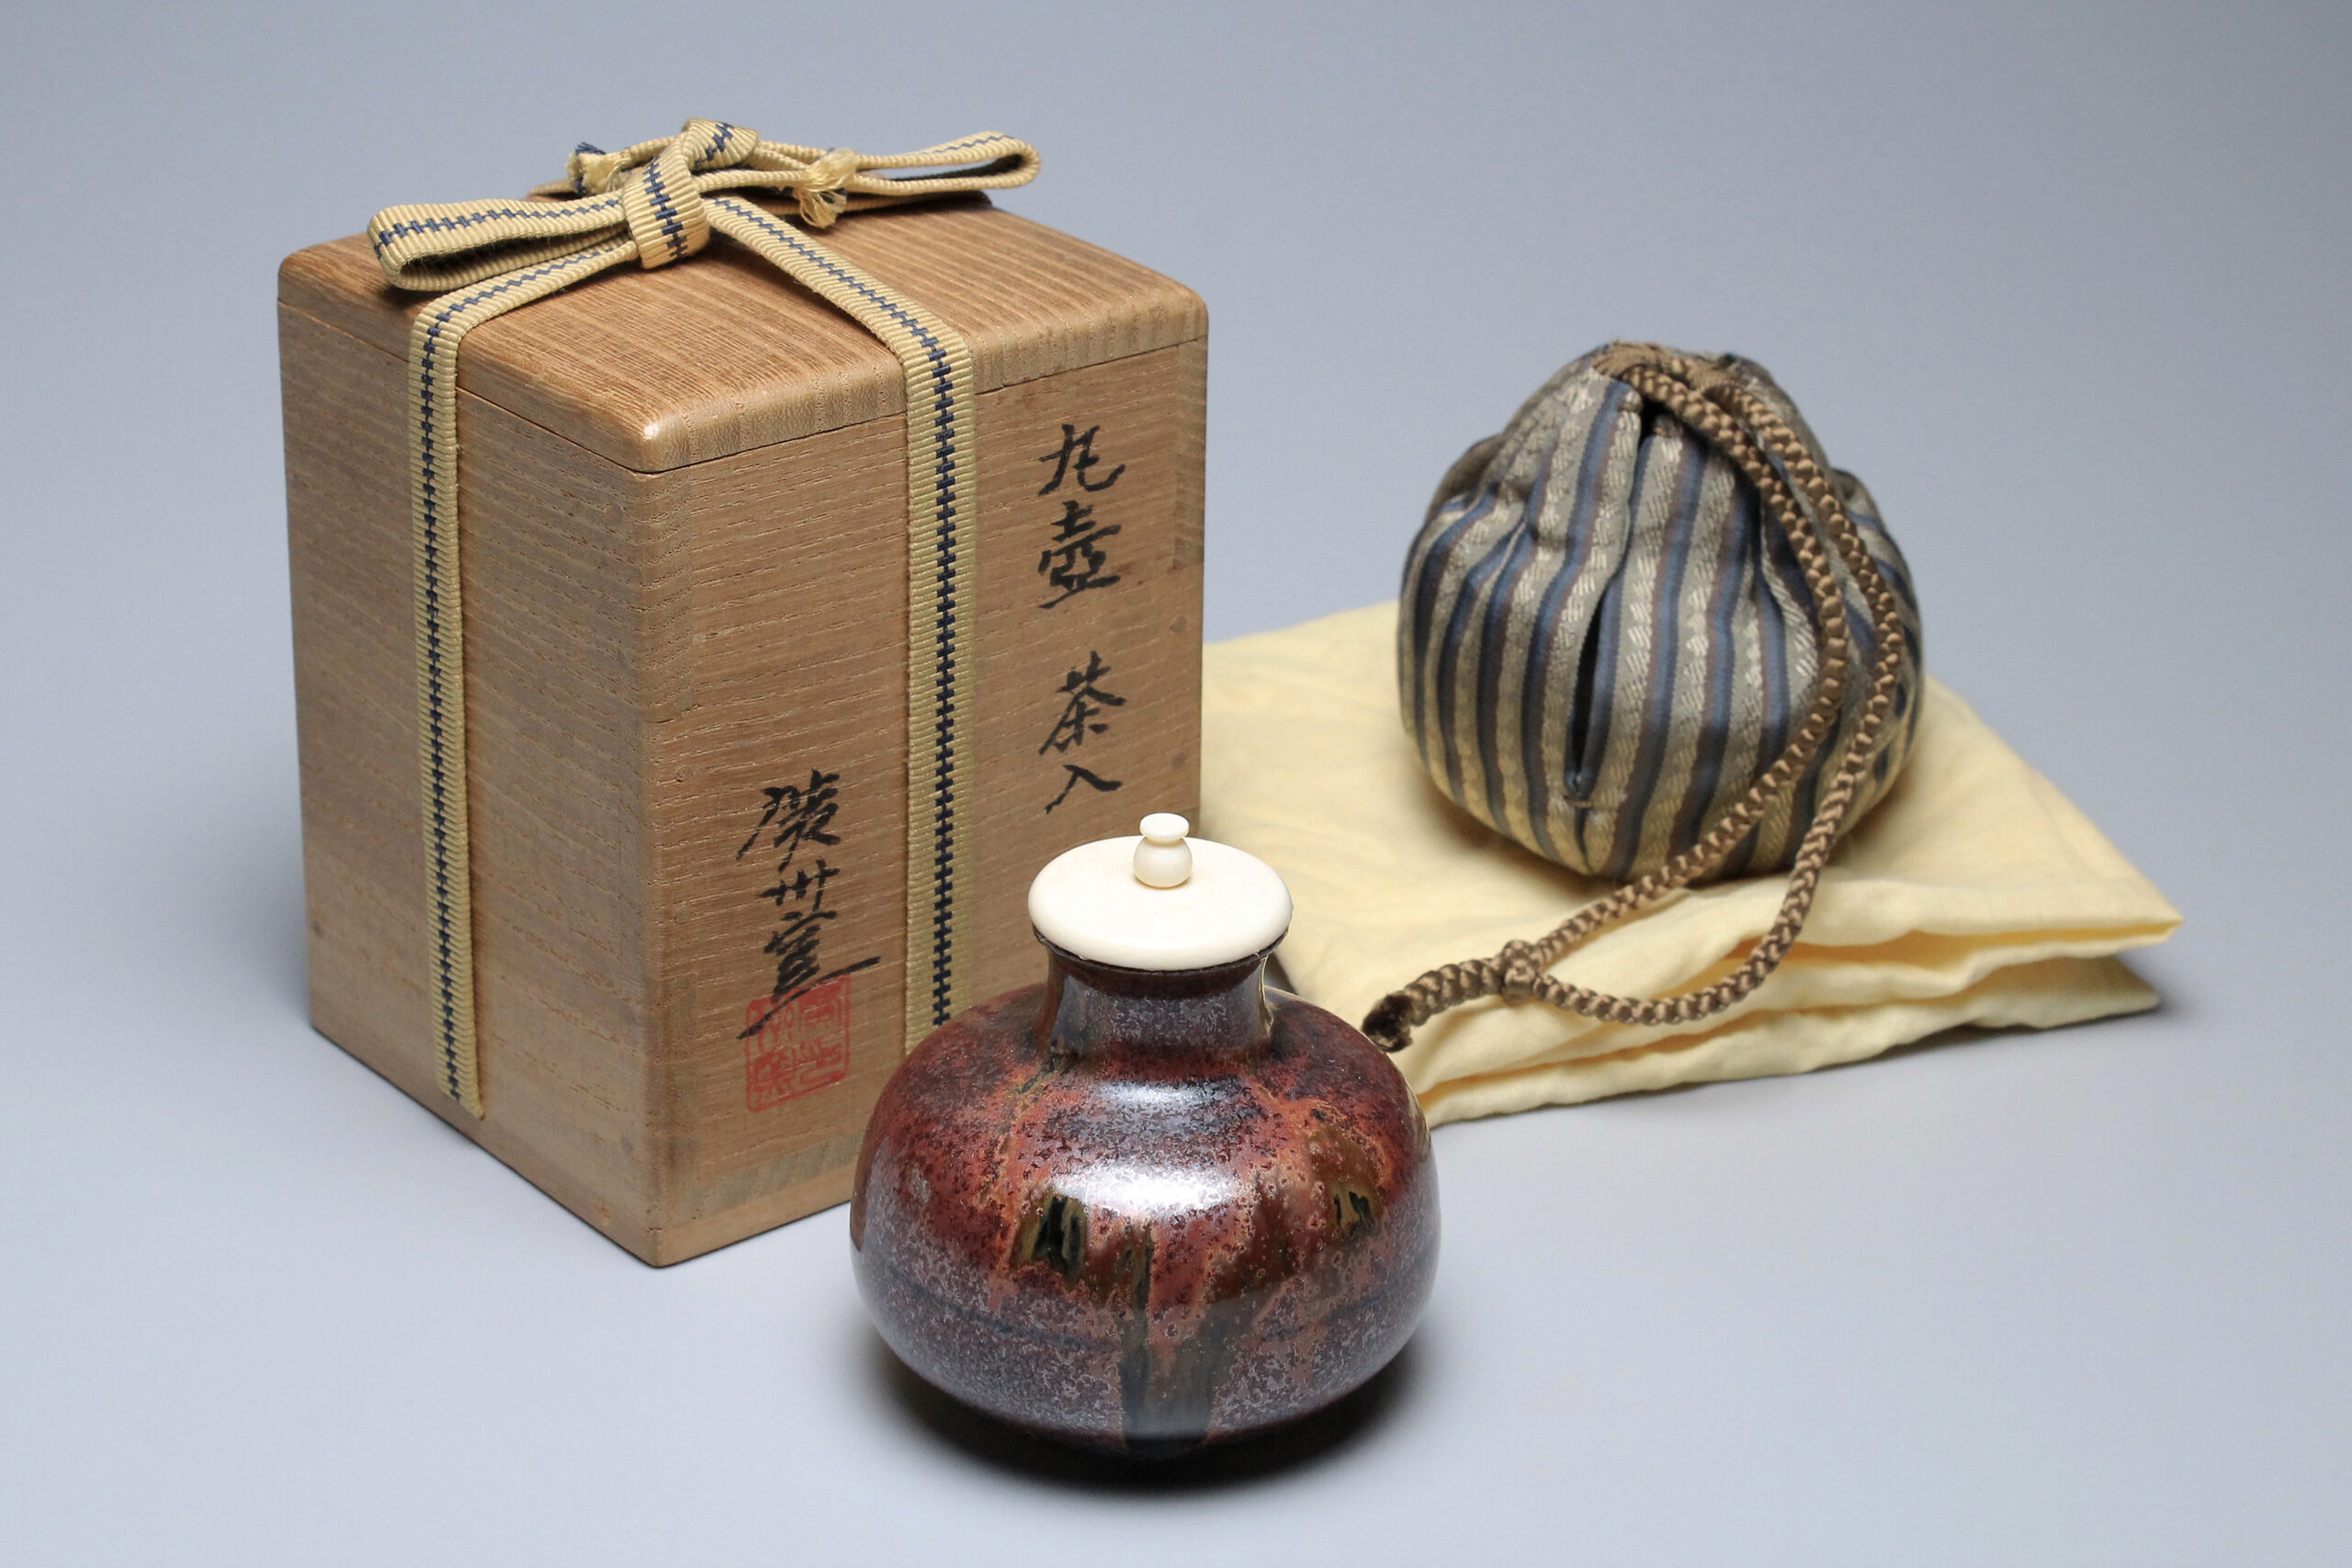 廣州窯 丸壺茶入 - 正一古美術